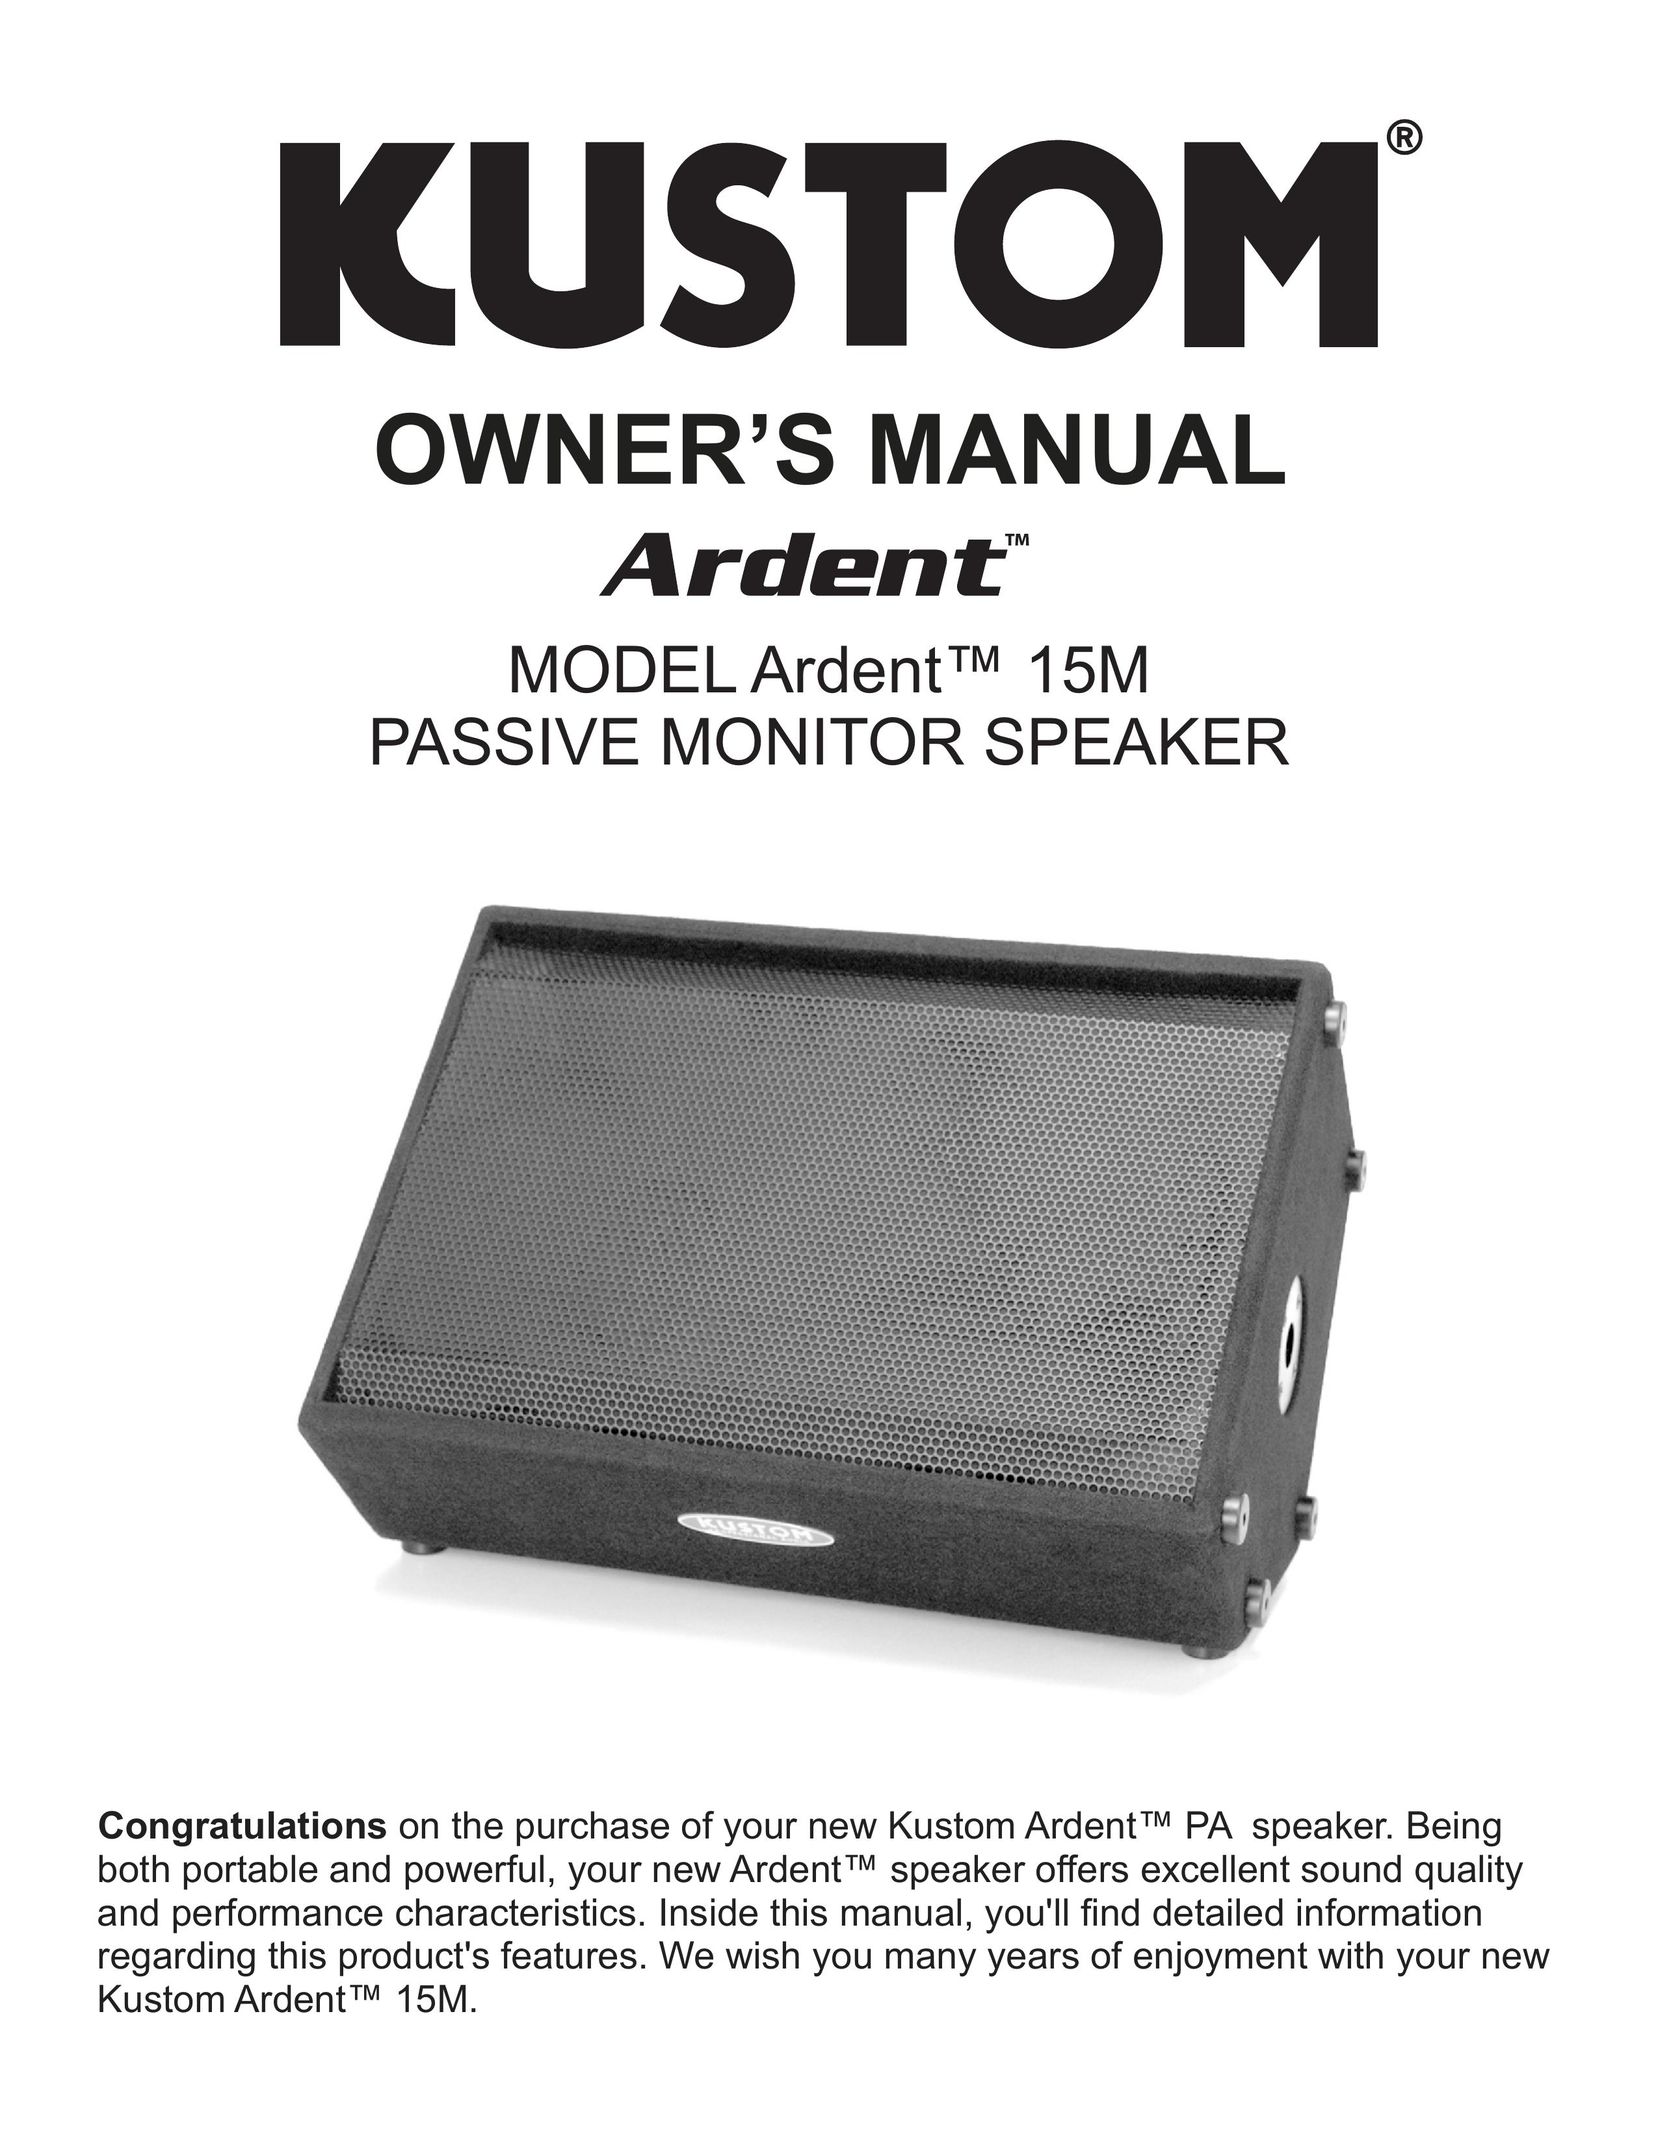 Kustom Ardent 15M Portable Speaker User Manual